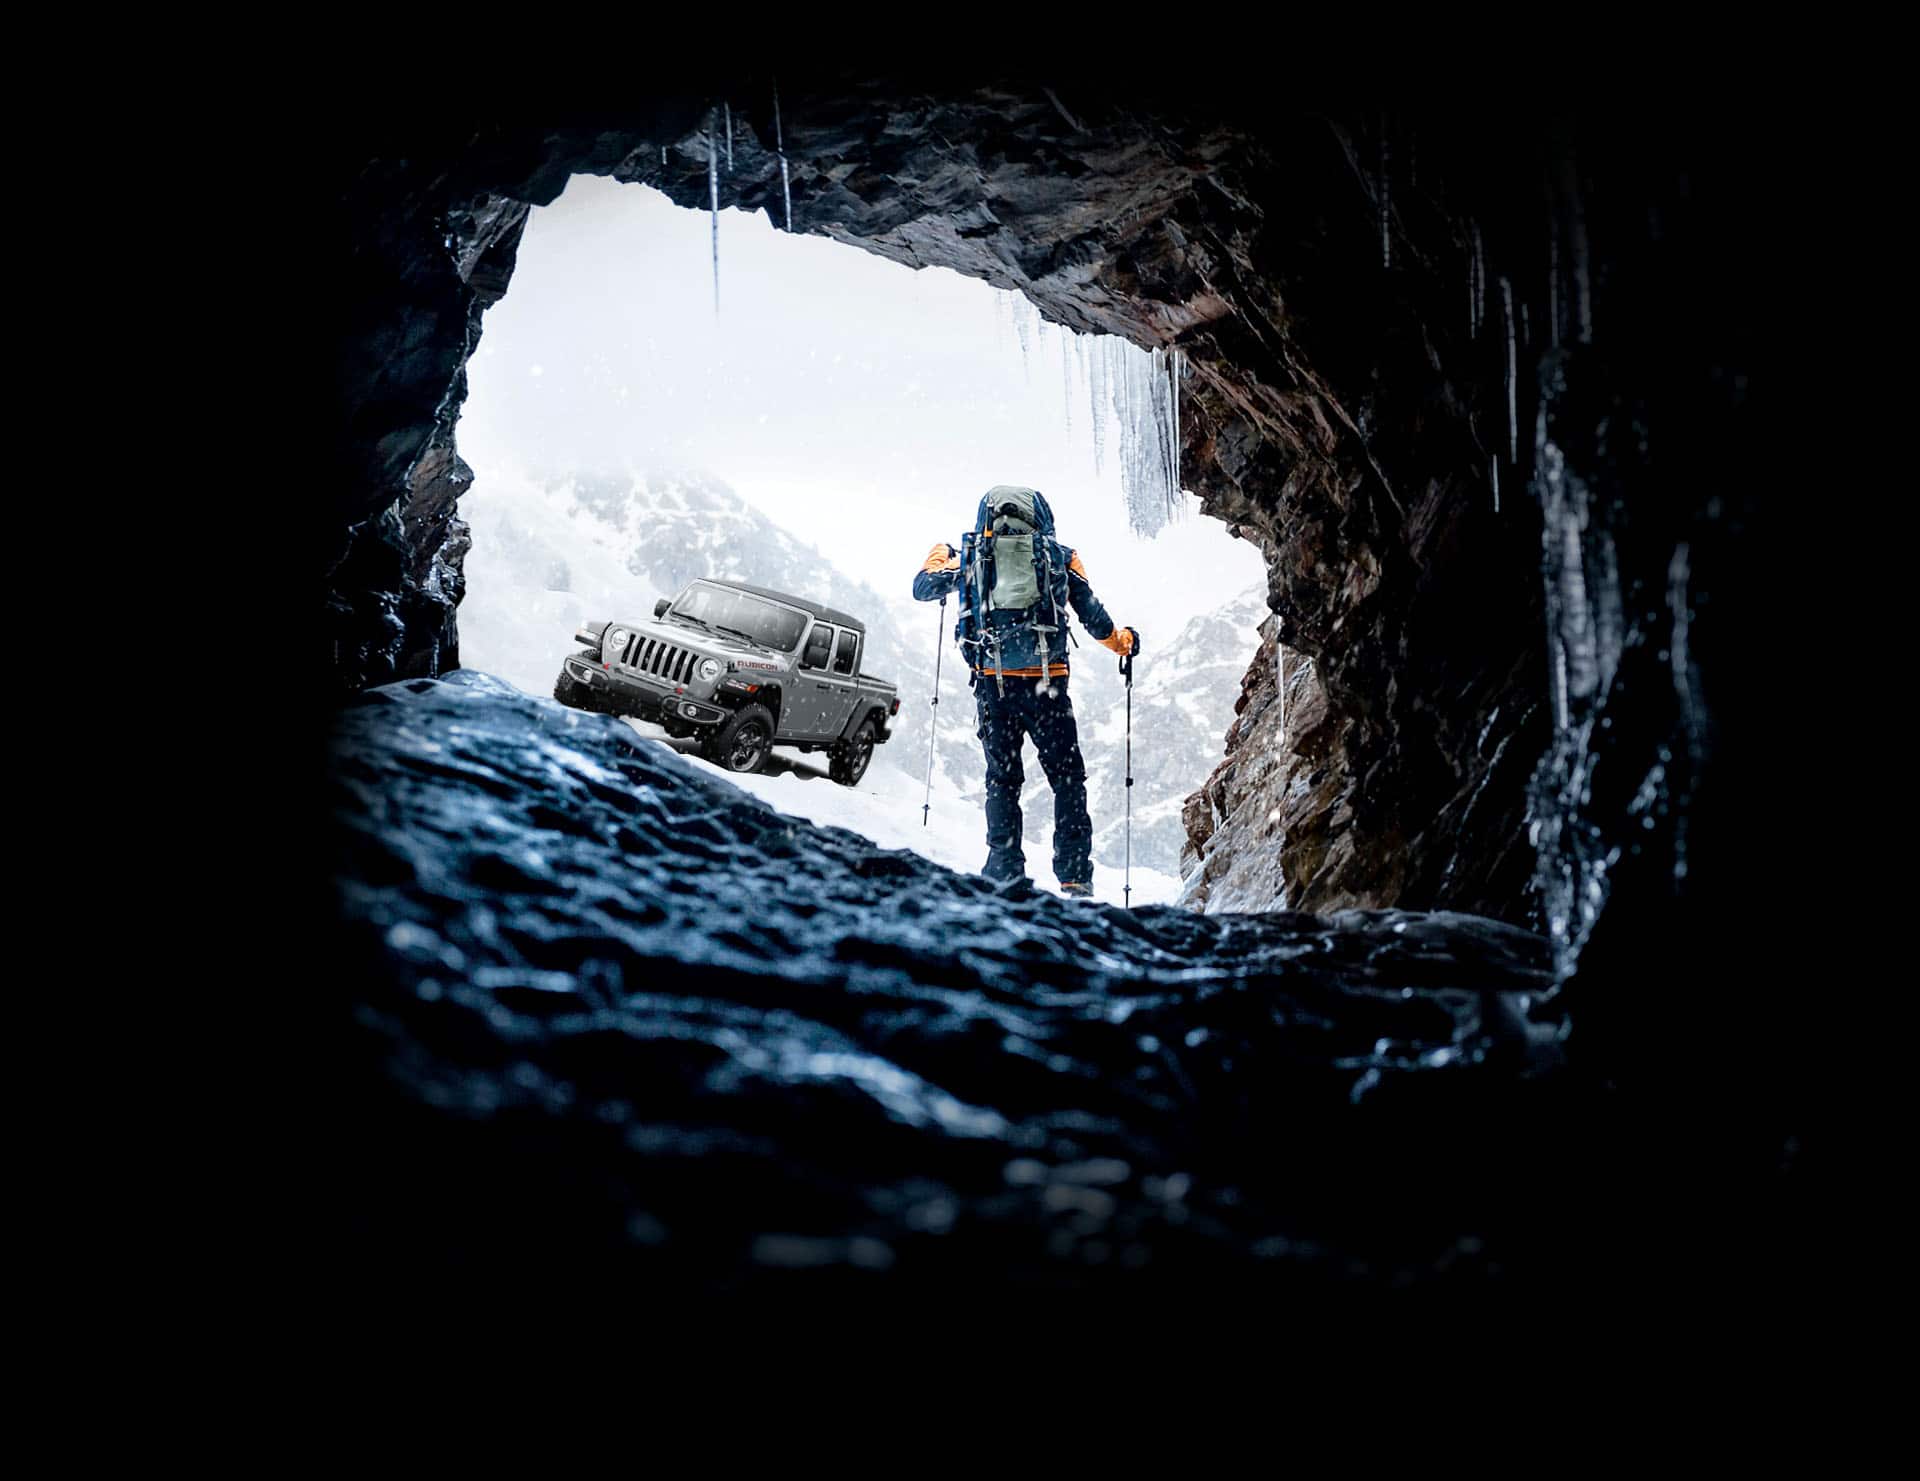 La Jeep Gladiator Rubicon 2022 estacionada mientras un alpinista camina hacia ella emergiendo de una gélida caverna en las montañas nevadas.